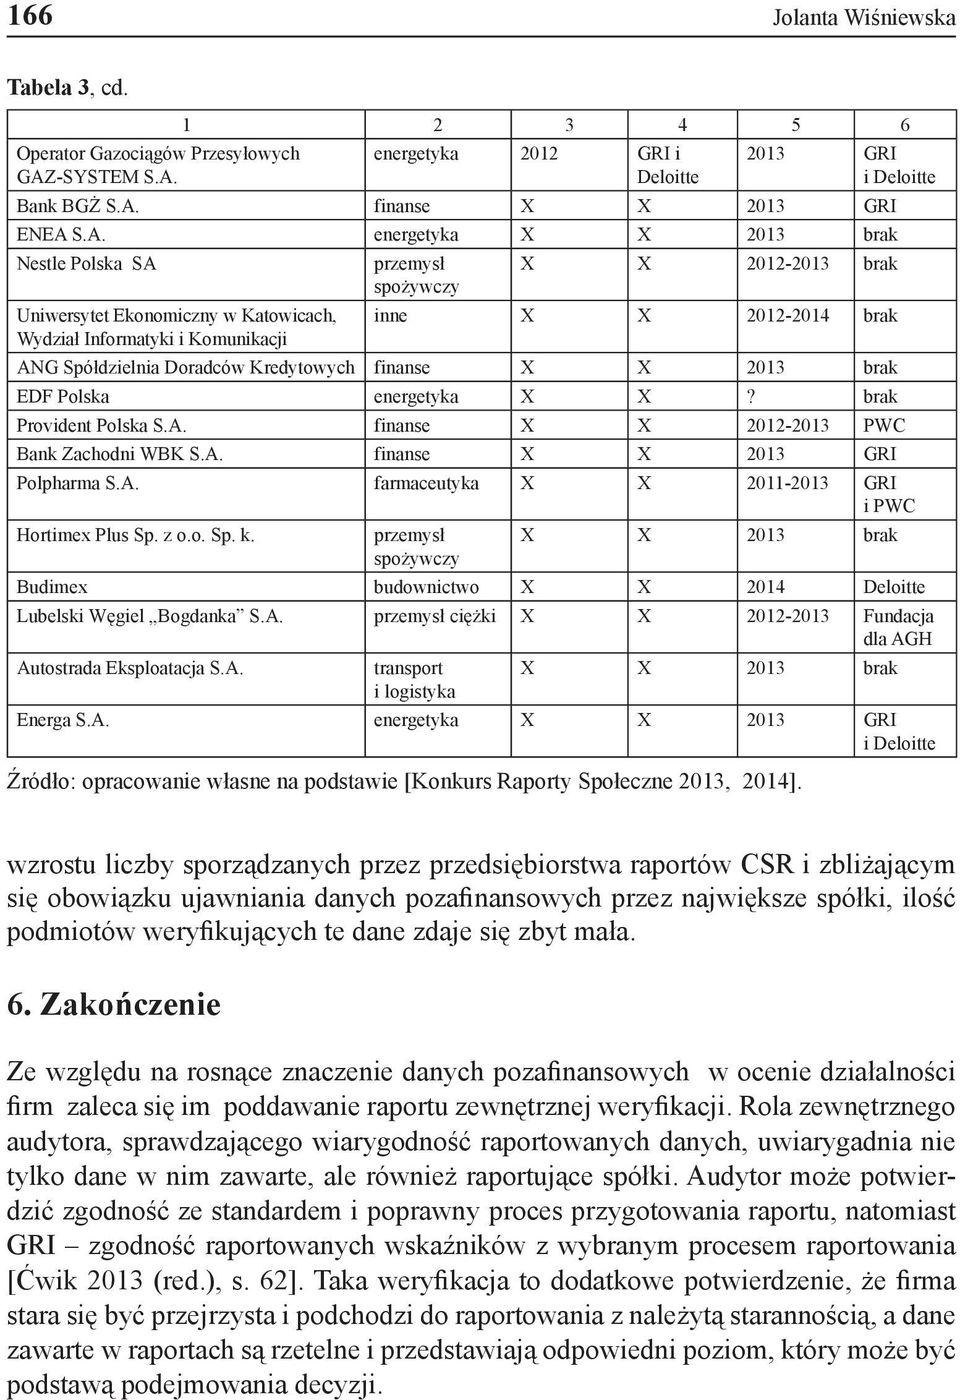 1 2 3 4 5 6 energetyka 2012 GRI i Deloitte 2013 GRI i Deloitte Bank BGŻ S.A.